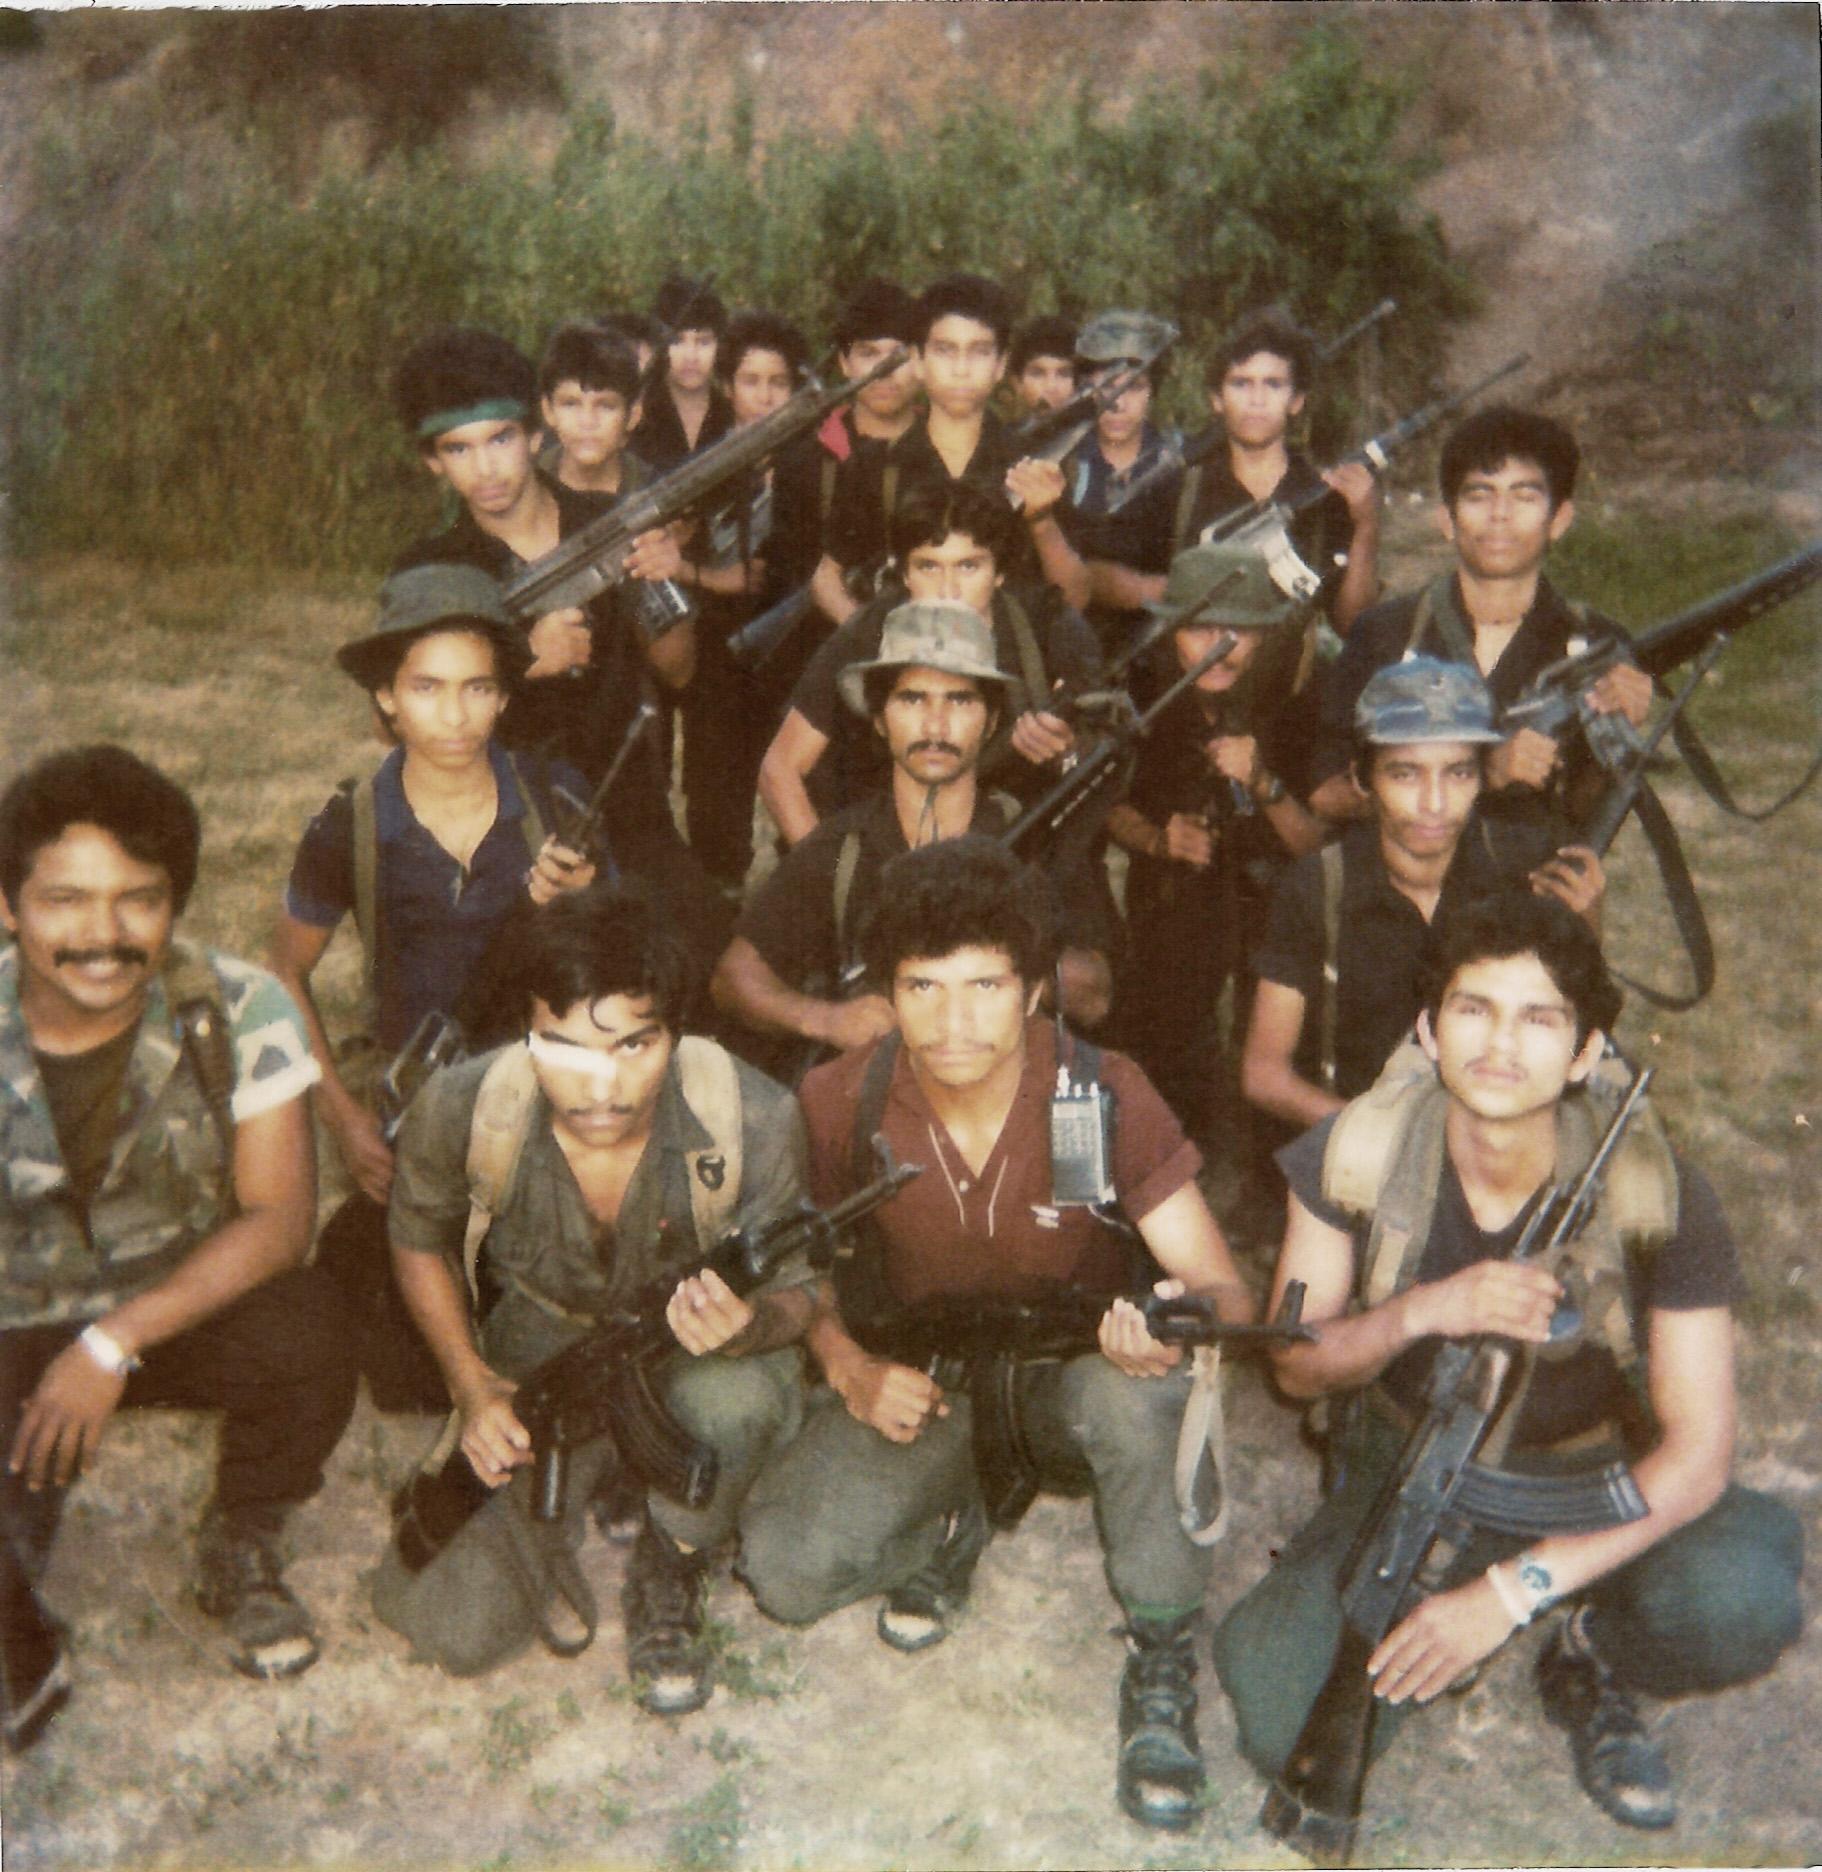 Fotografía de una unidad de las Fuerzas Populares de Liberación (FPL) tomada en San José Las Flores, Chalatenango, en el mes de octubre de 1989. Este pelotón se montó en preparación de la ofensiva de 1989. De las 20 personas en la foto, 18 sobrevivieron la guerra. En la posguerra algunos se asentaron en las repoblaciones, otros emigraron al Norte, algunos se convirtieron en PNC, y uno logró estudiar medicina en Cuba. A lo largo del tiempo, varios excombatientes de esta foto obtuvieron empleo mediante sus conexiones con el FMLN.